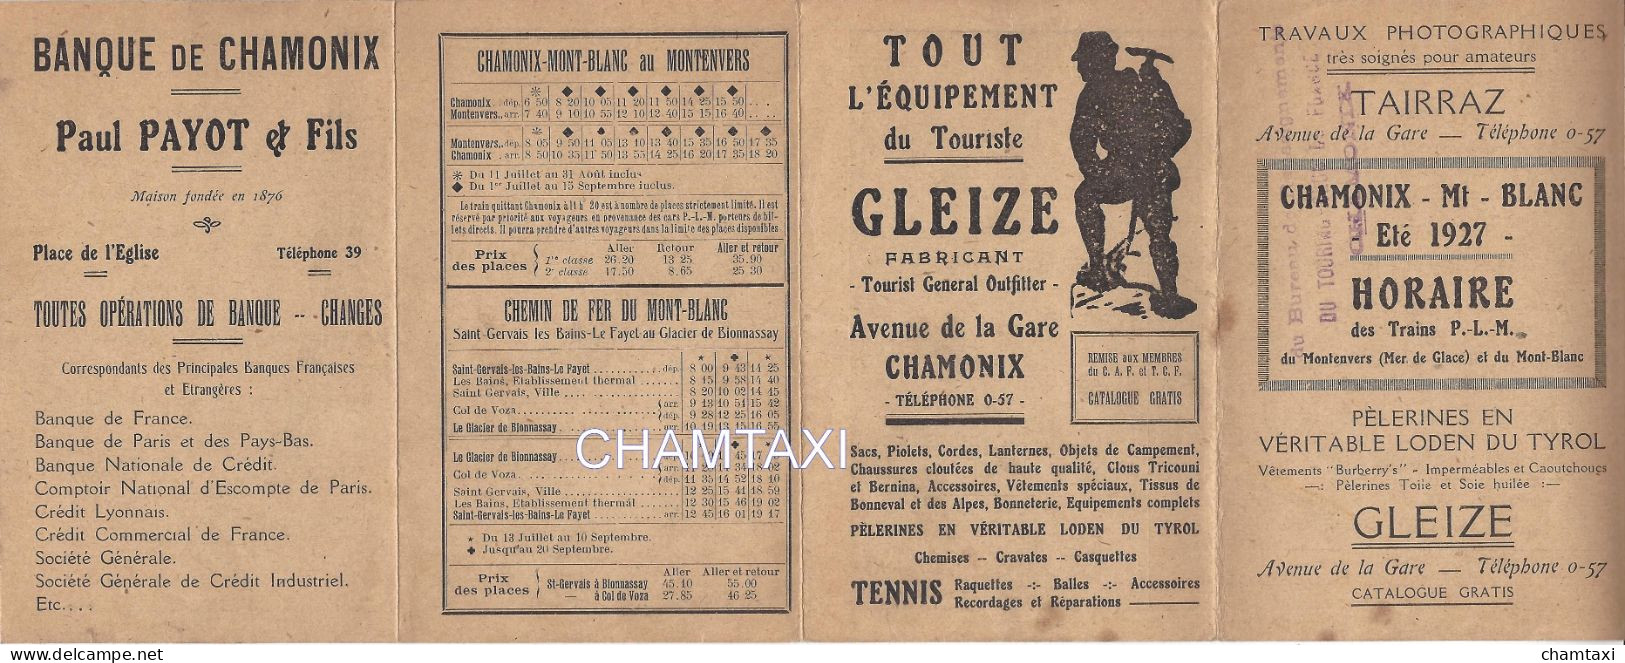 74 CHAMONIX MONT BLANC HORAIRE DES TRAINS DU MONTENVERS MER DE GLACE PUBLICITES TAIRRAZ BANQUE PAYOT ET GLEIZE - Sports & Tourisme